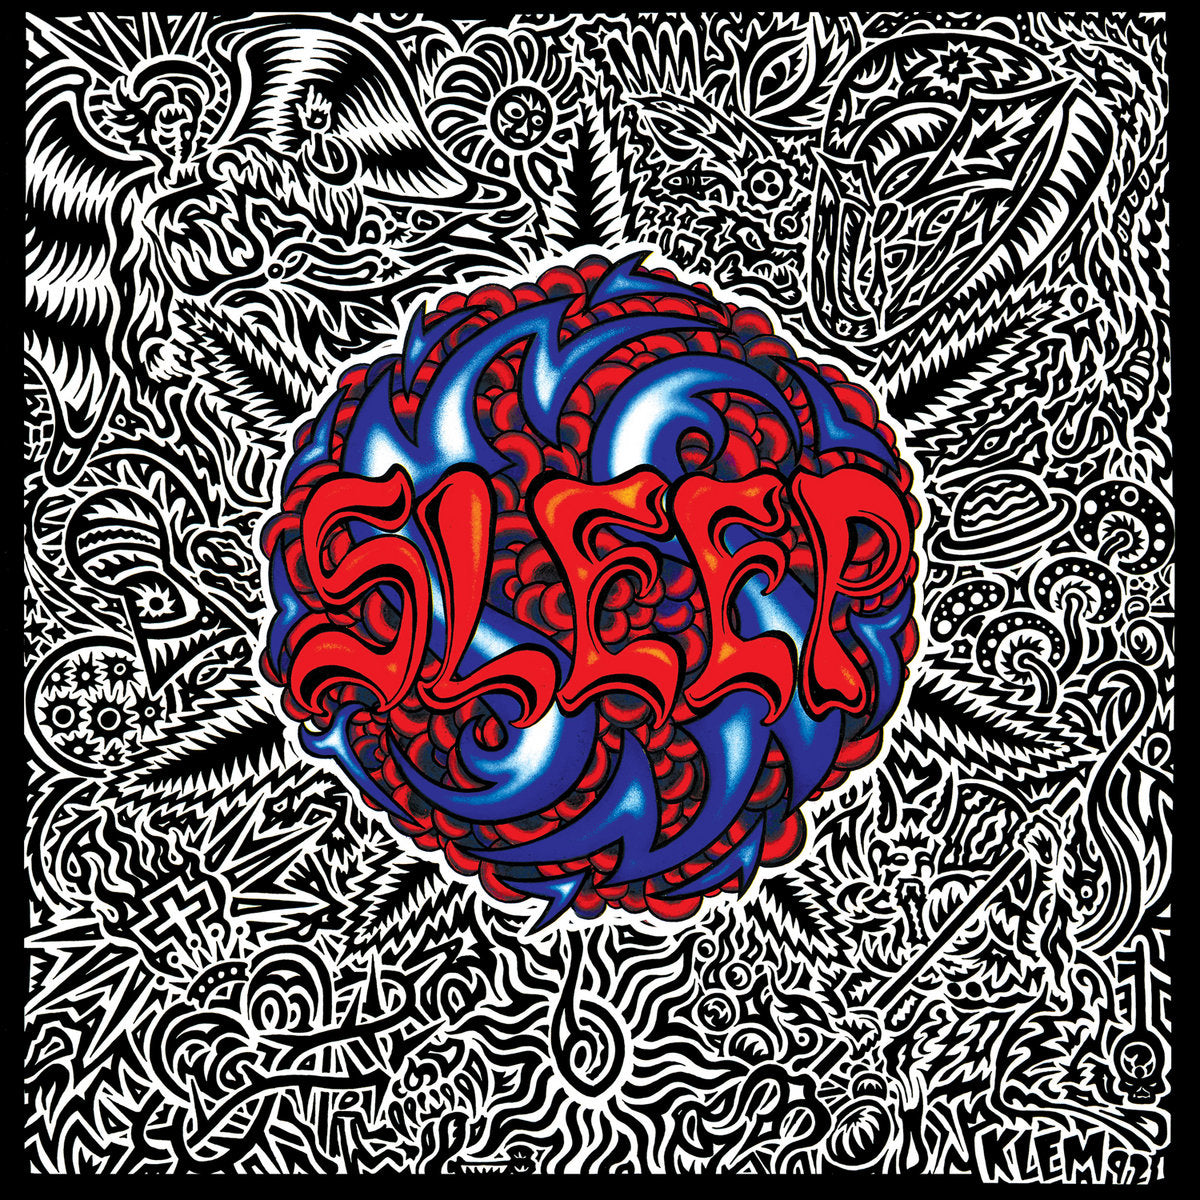 Sleep "Sleep's Holy Mountain" Limited Edition FDR Doublemint Vinyl